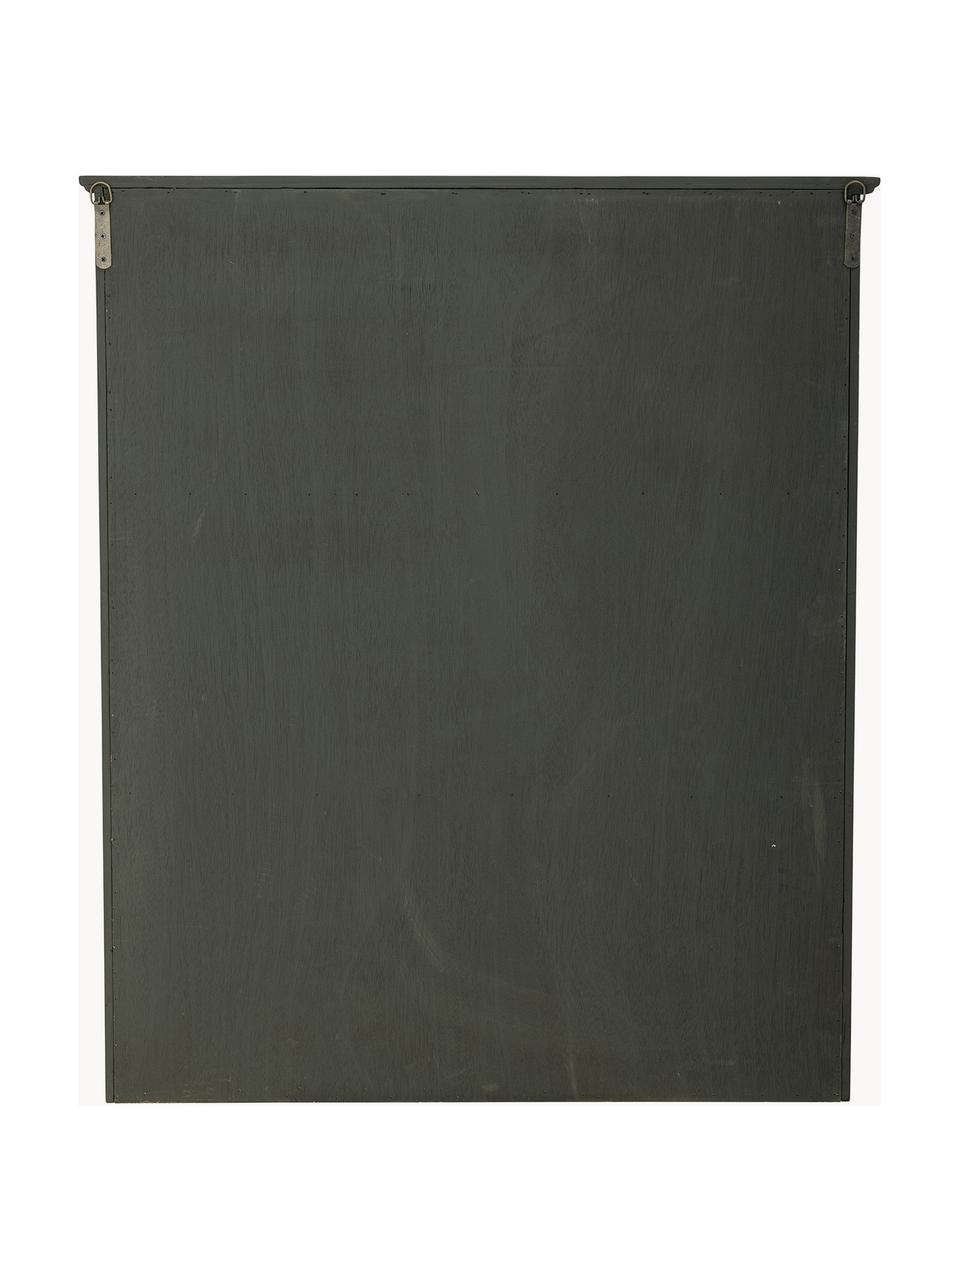 Witryna z drewna jodłowego Tone, Stelaż: drewno jodłowe, Ciemny zielony, S 85 x W 100 cm